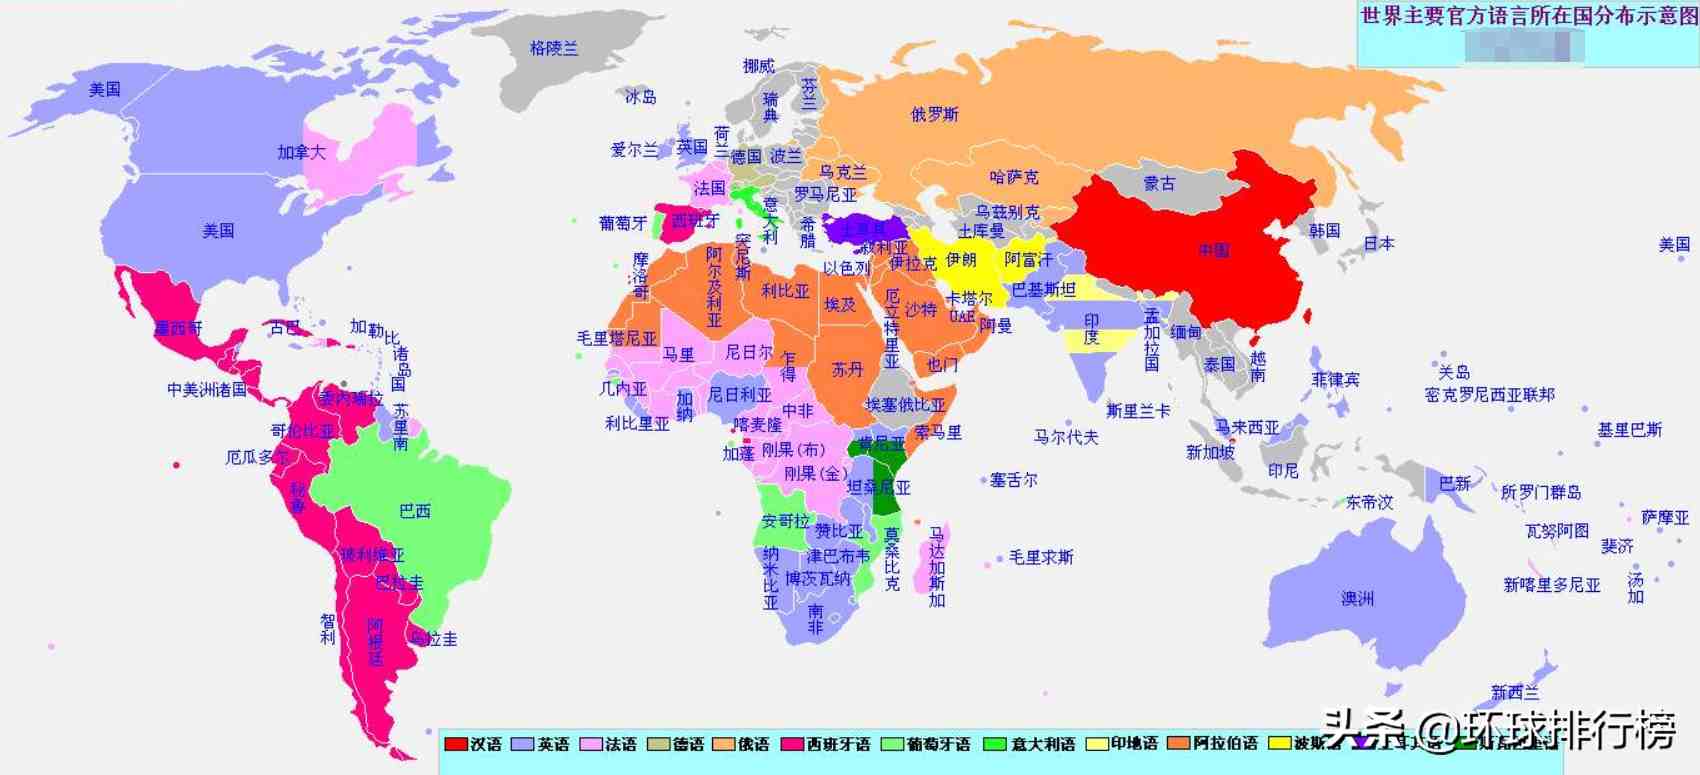 使用人数最多的语言是哪些|世界使用人数最多的语言排名Top10